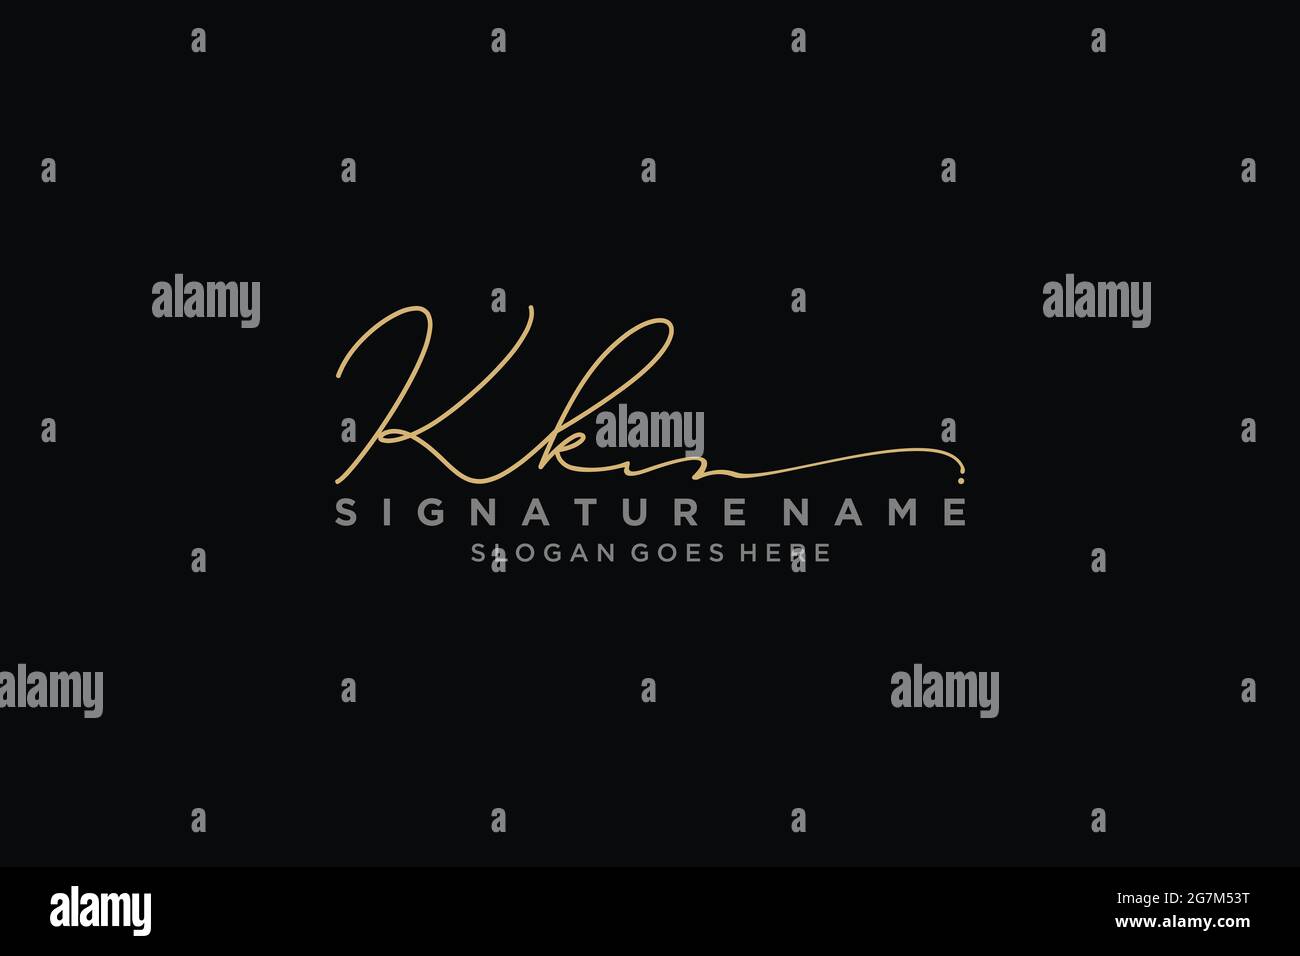 KK lettre Signature logo Template Design élégant logo Sign symbole modèle icône vectorielle Illustration de Vecteur